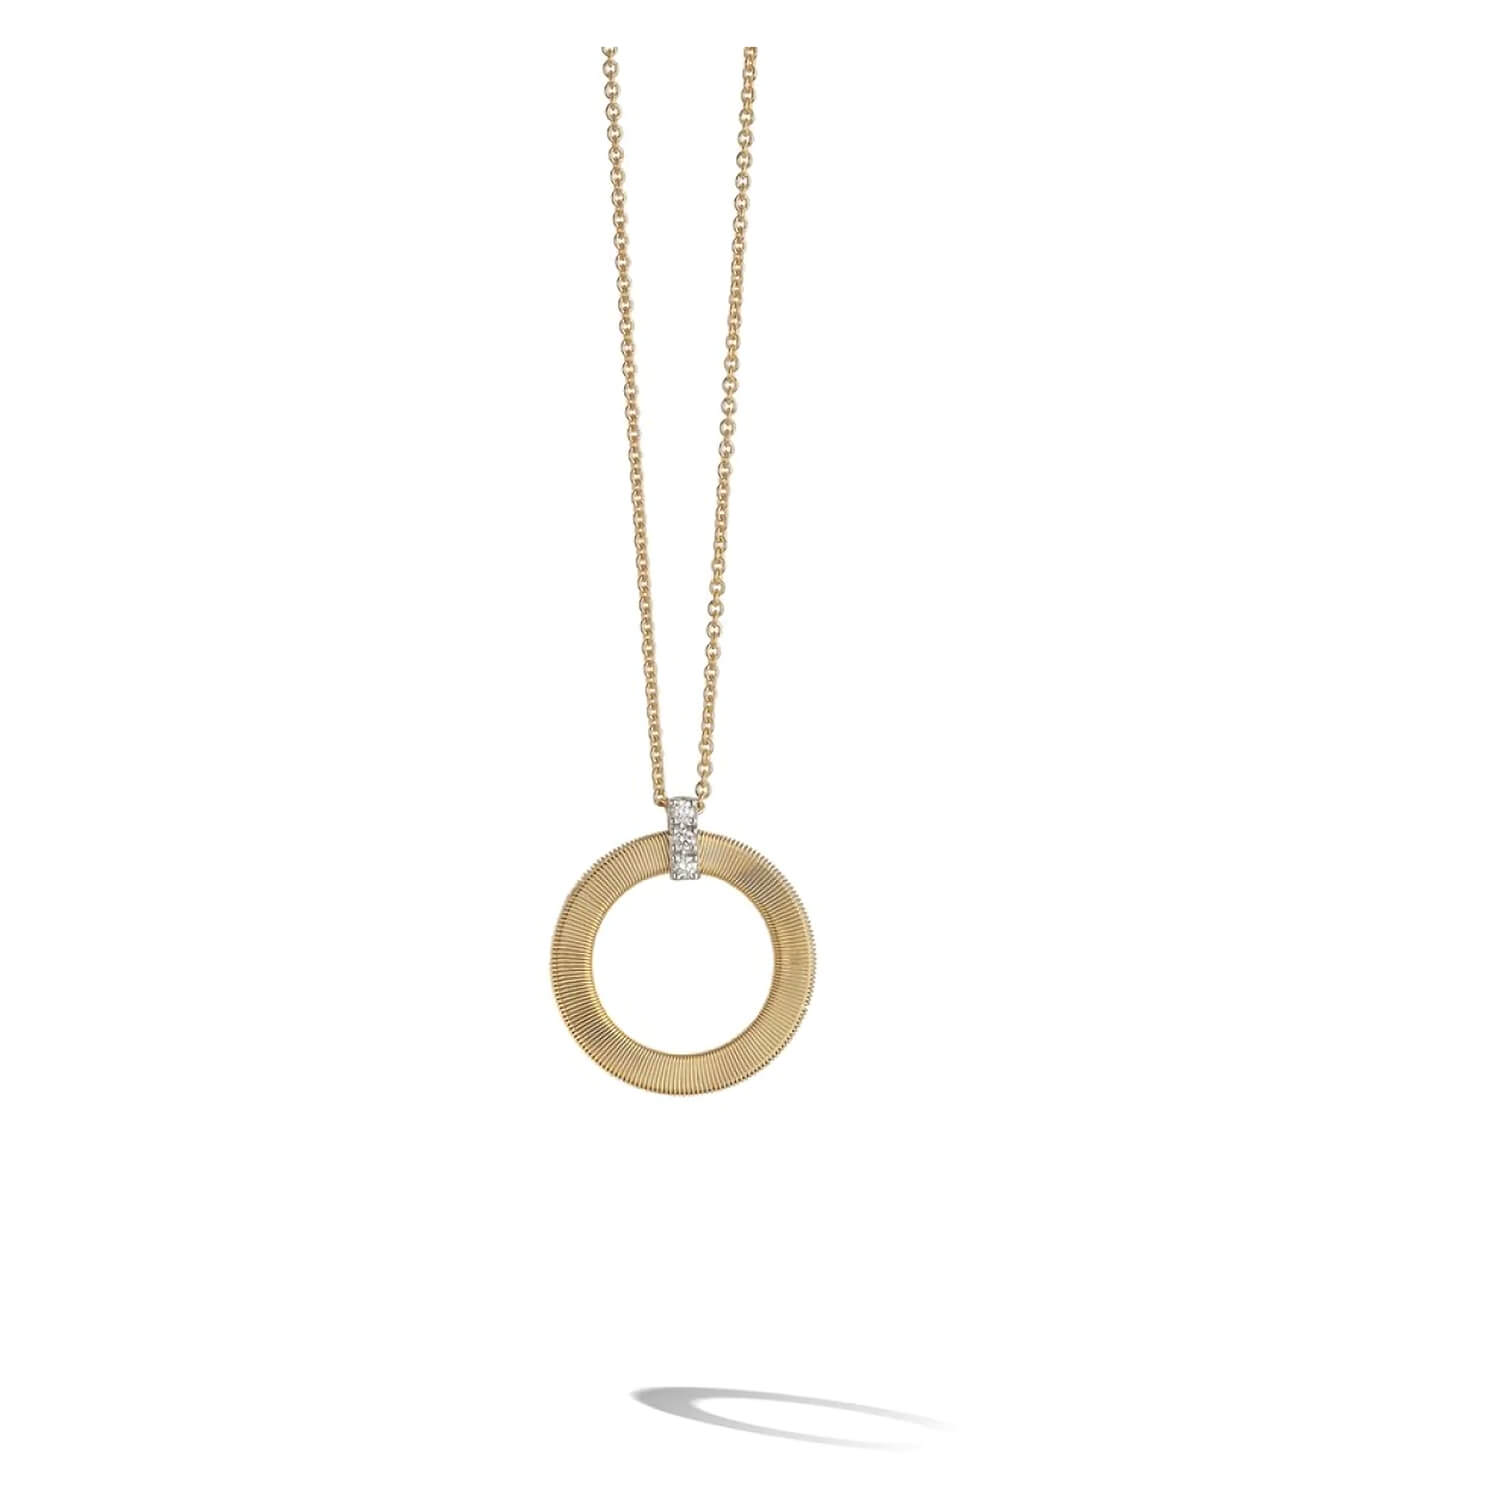 Photos - Pendant / Choker Necklace Marco Bicego Masai 18K Yellow Gold Diamond Single Circle Short Necklace